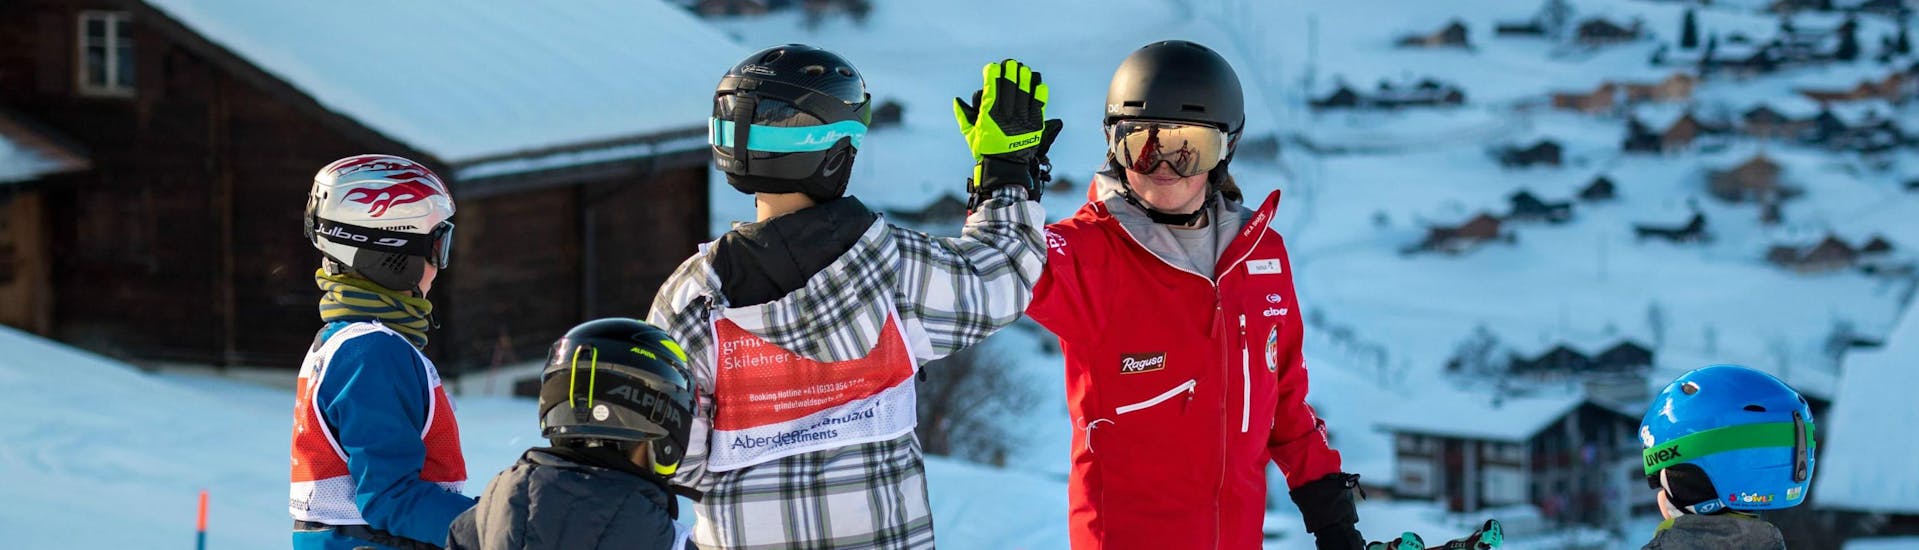 Eine Gruppe von jungen Skifahrer hat während ihrem Kinder-Skikurs für fortgeschrittene Anfänger mit der Skischule Grindelwald Spaß und gibt ihrem Skilehrer ein High-Five.